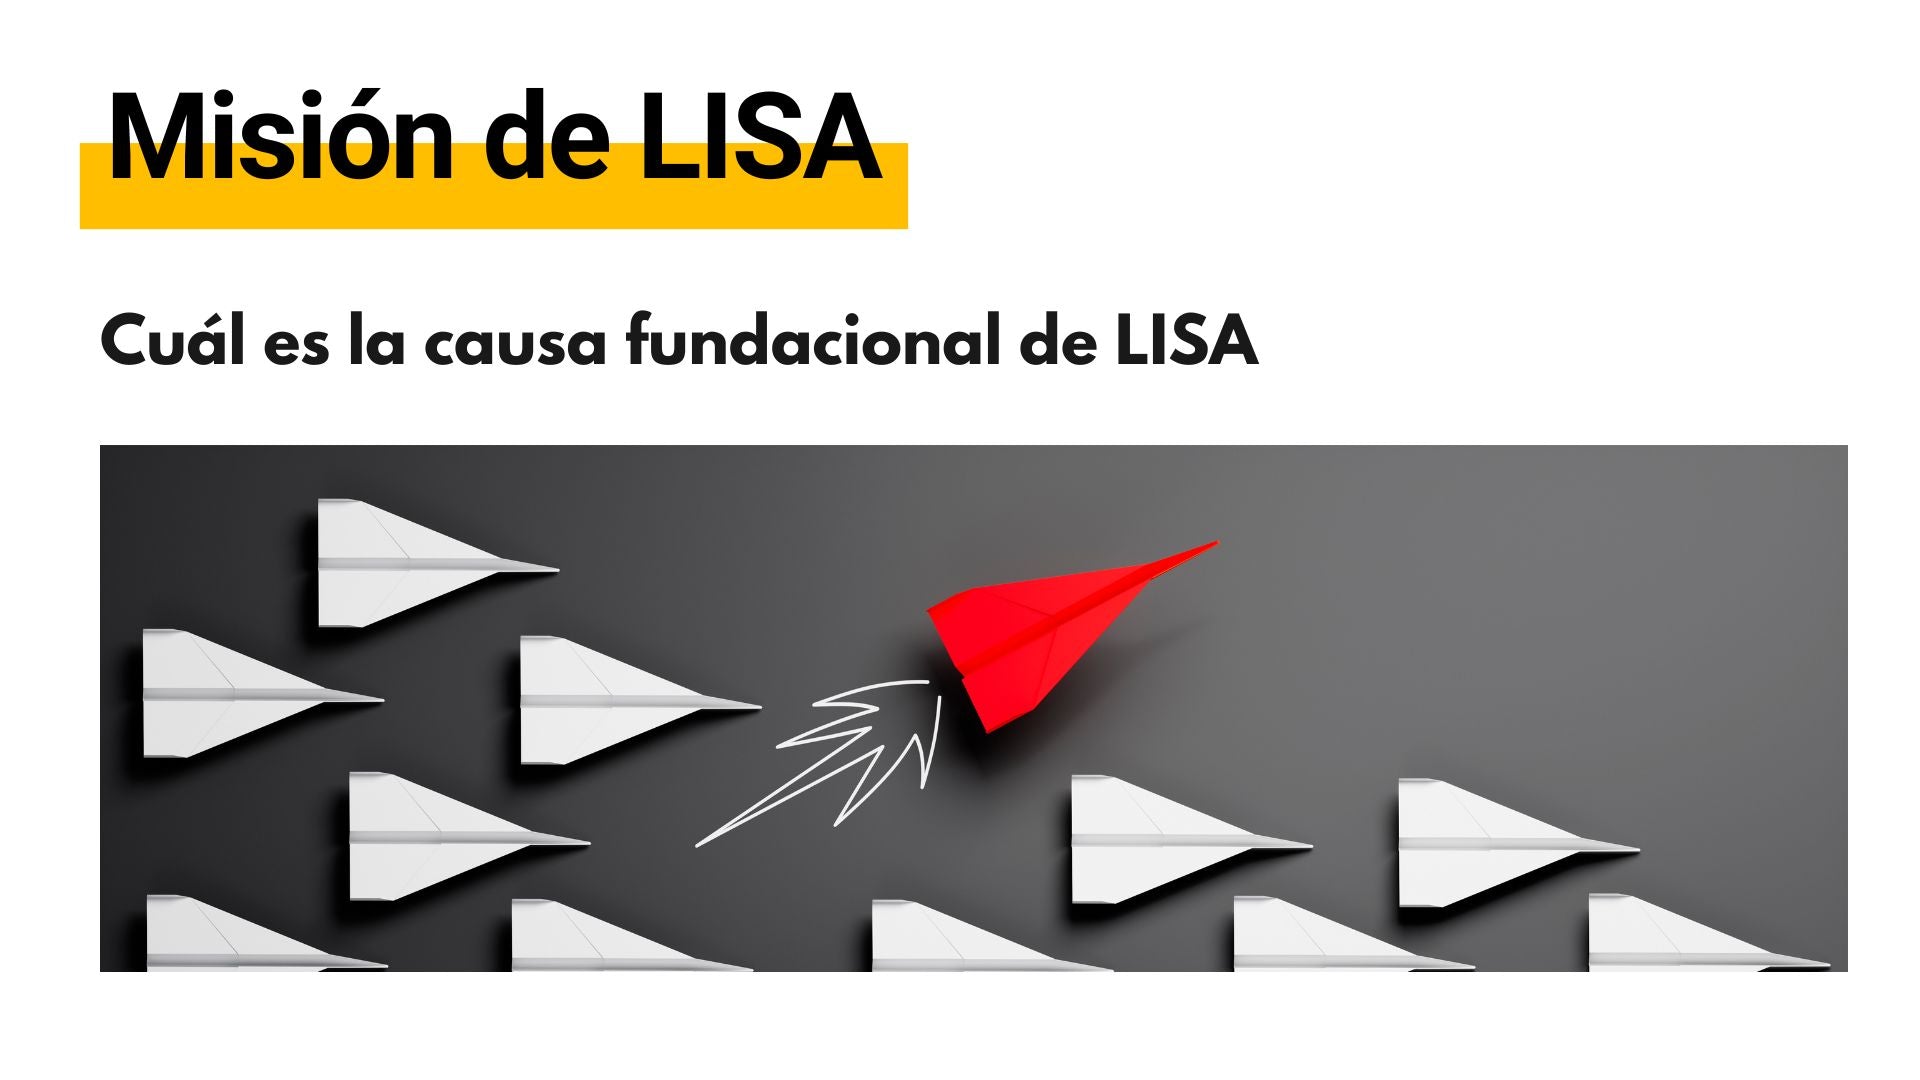 Misión de LISA, objetivos y causa fundacional